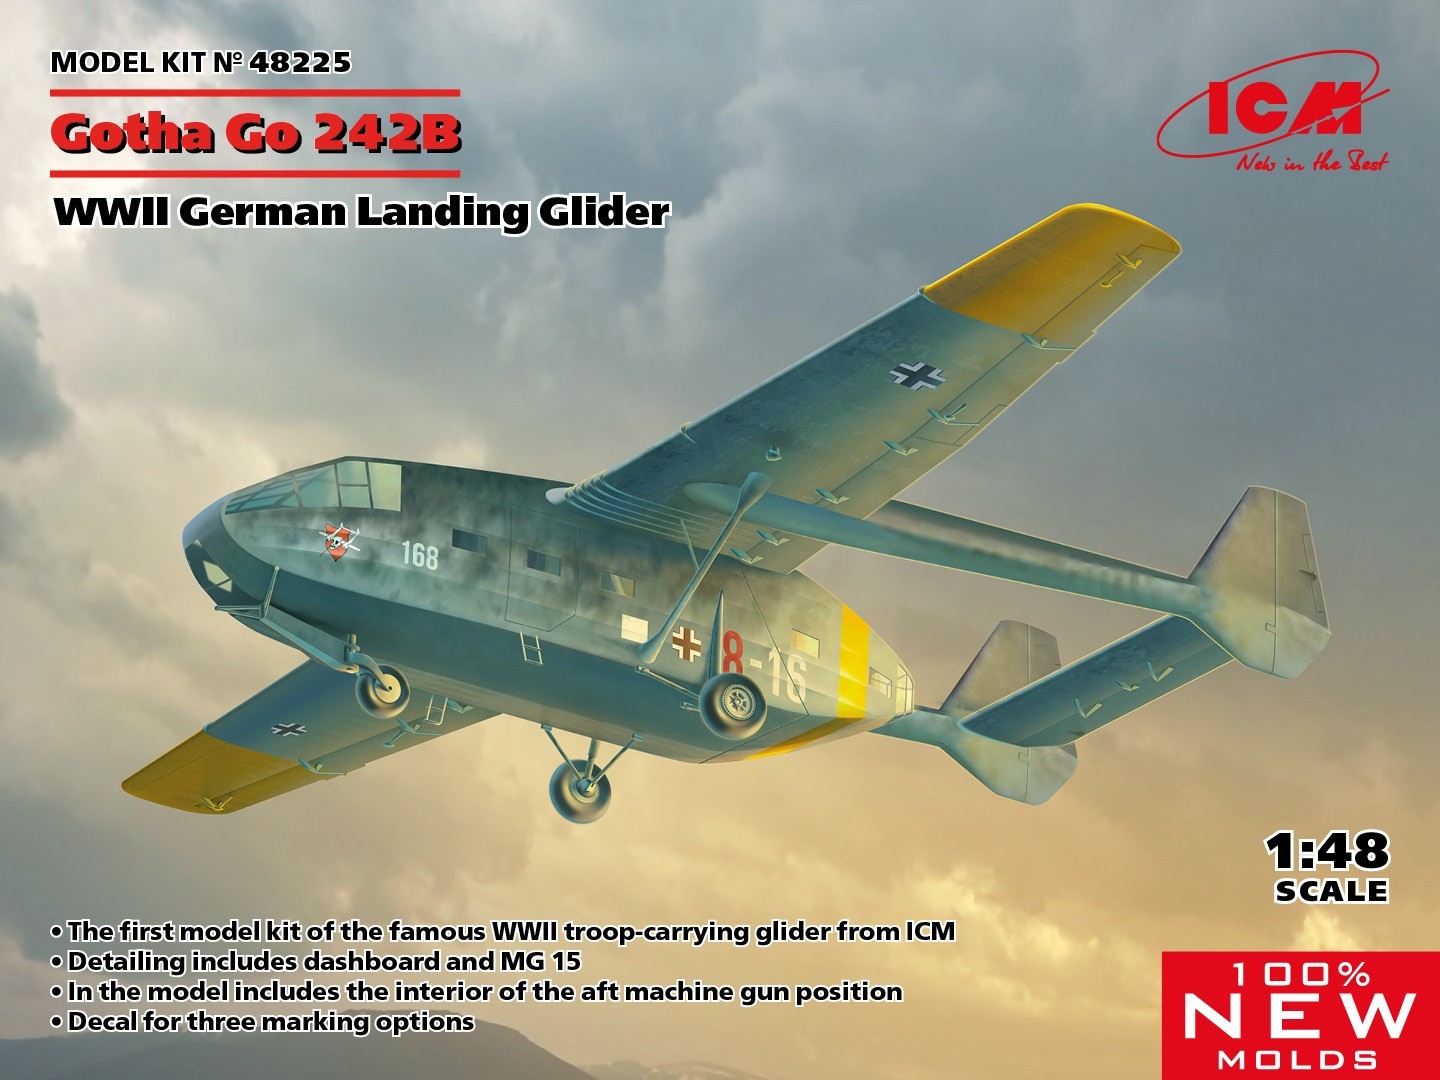 48225 Gotha Go 242B WWII German Landing Glider